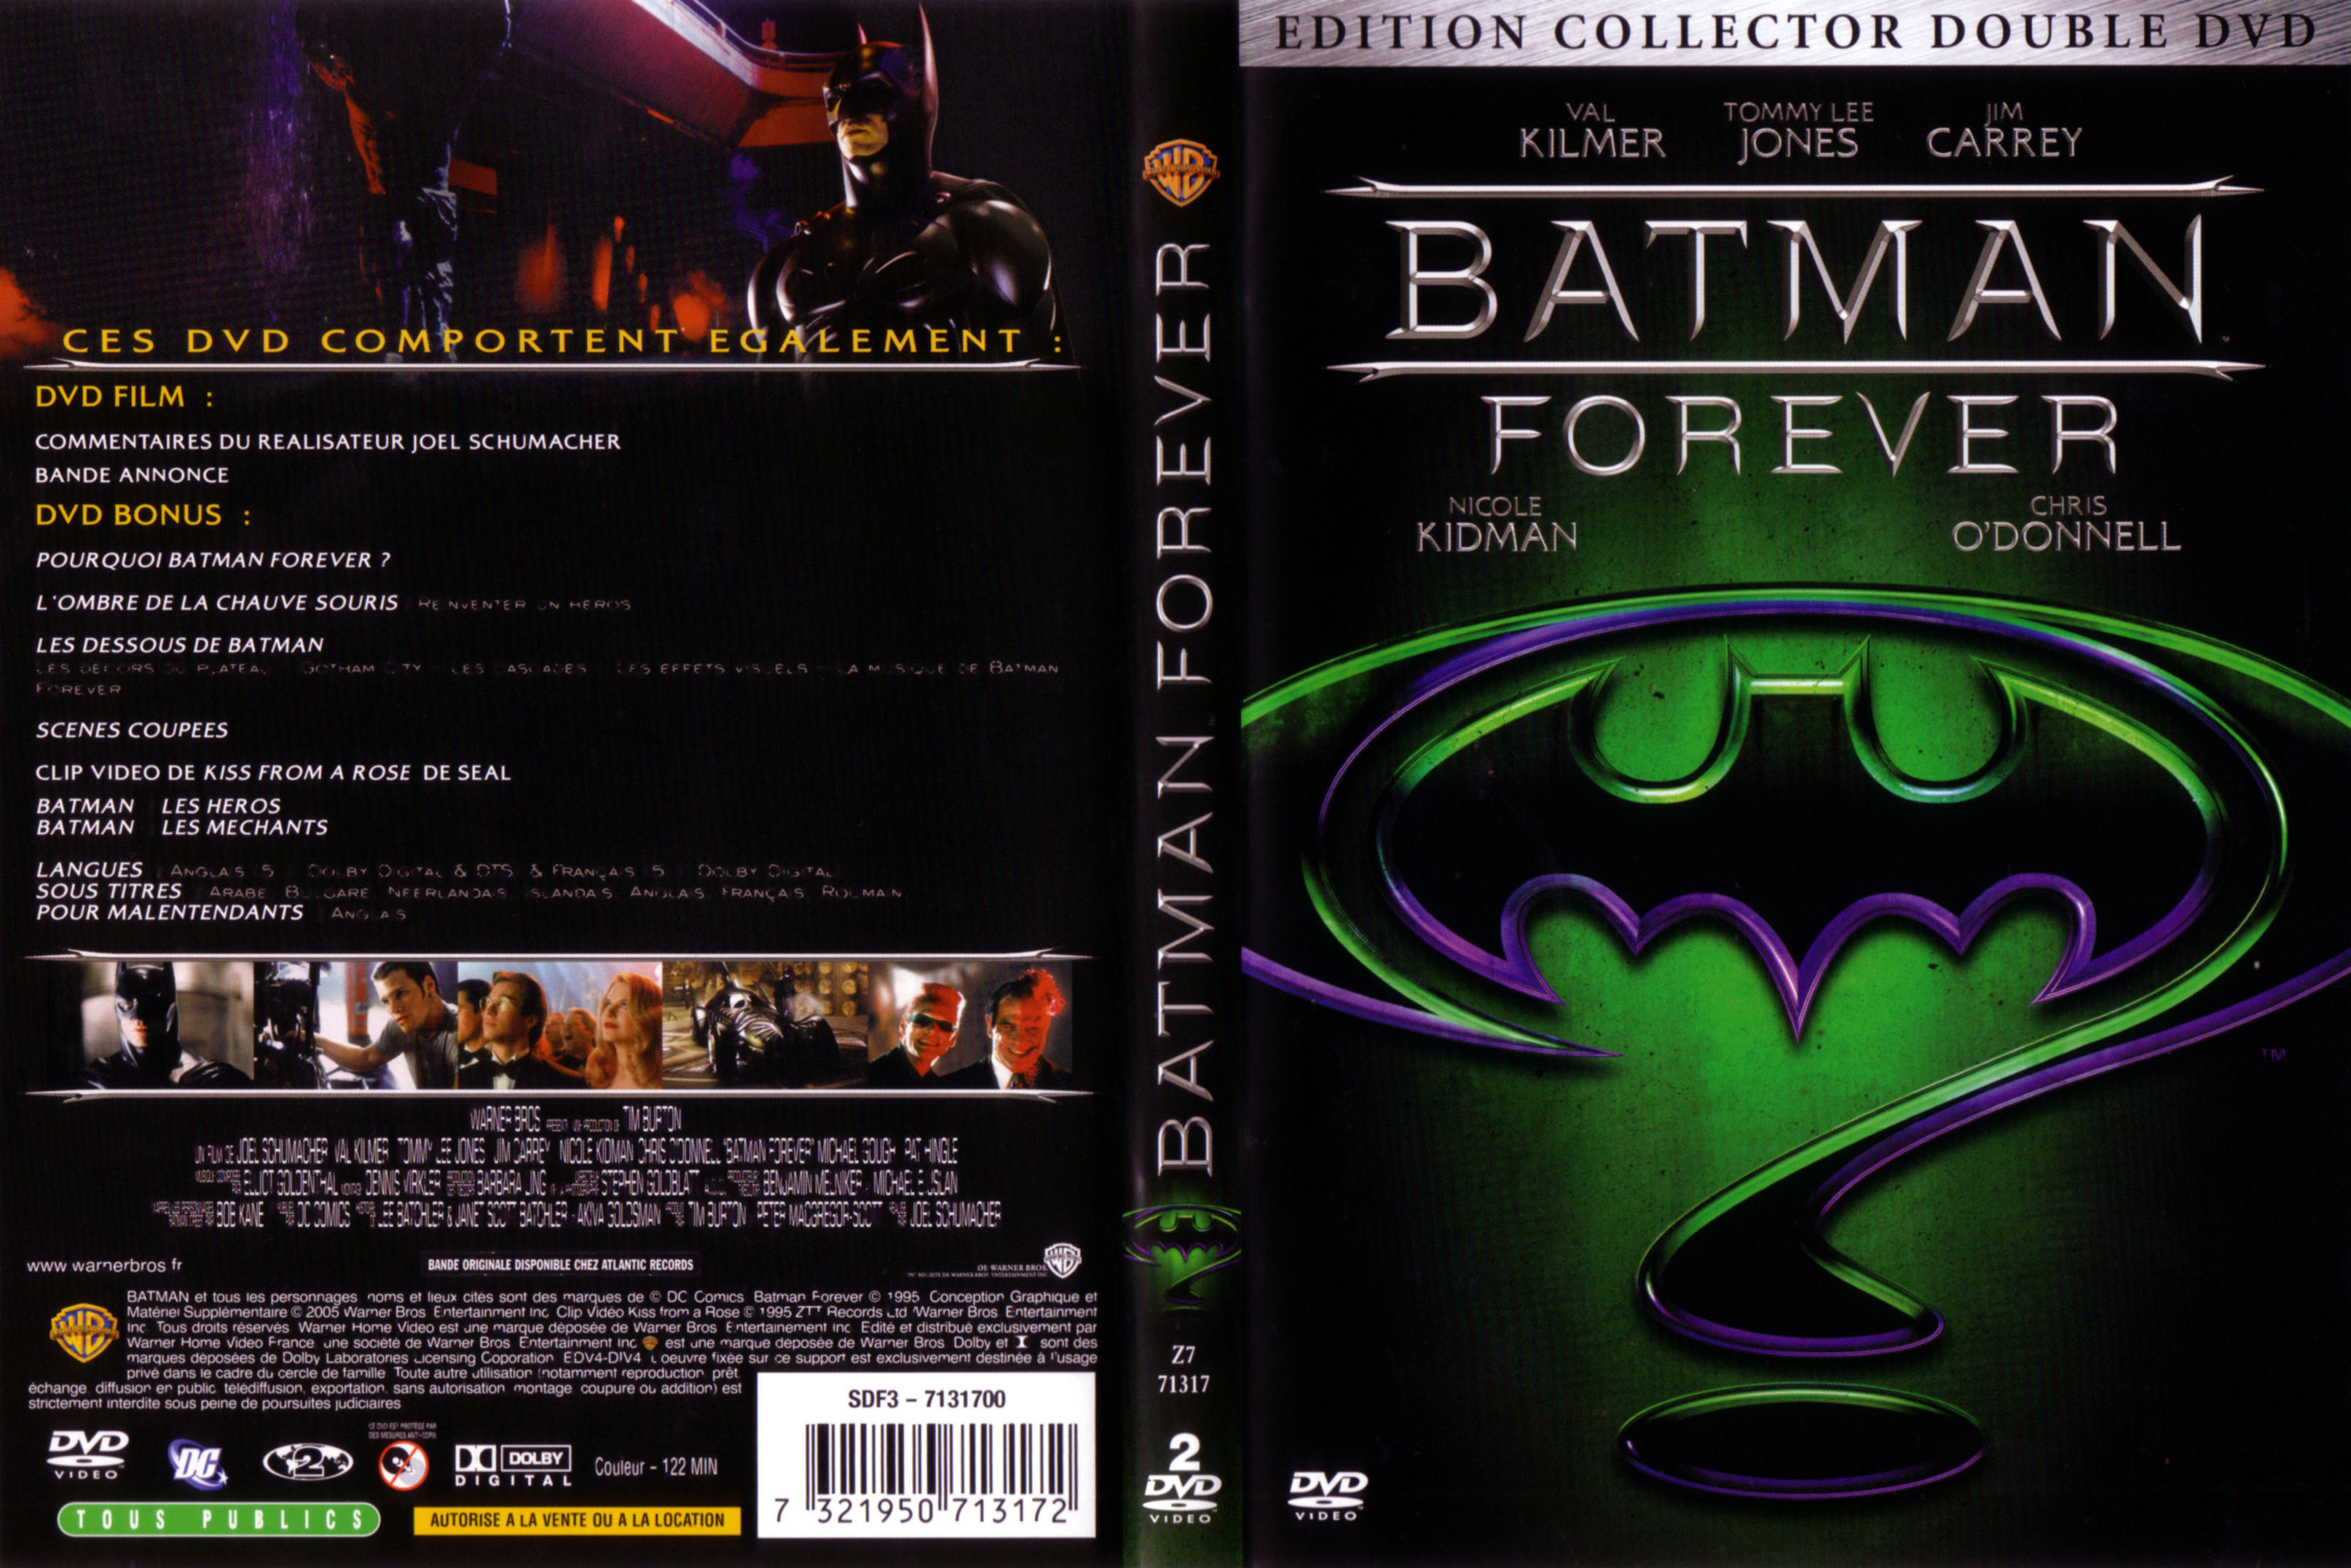 Jaquette DVD Batman forever v3